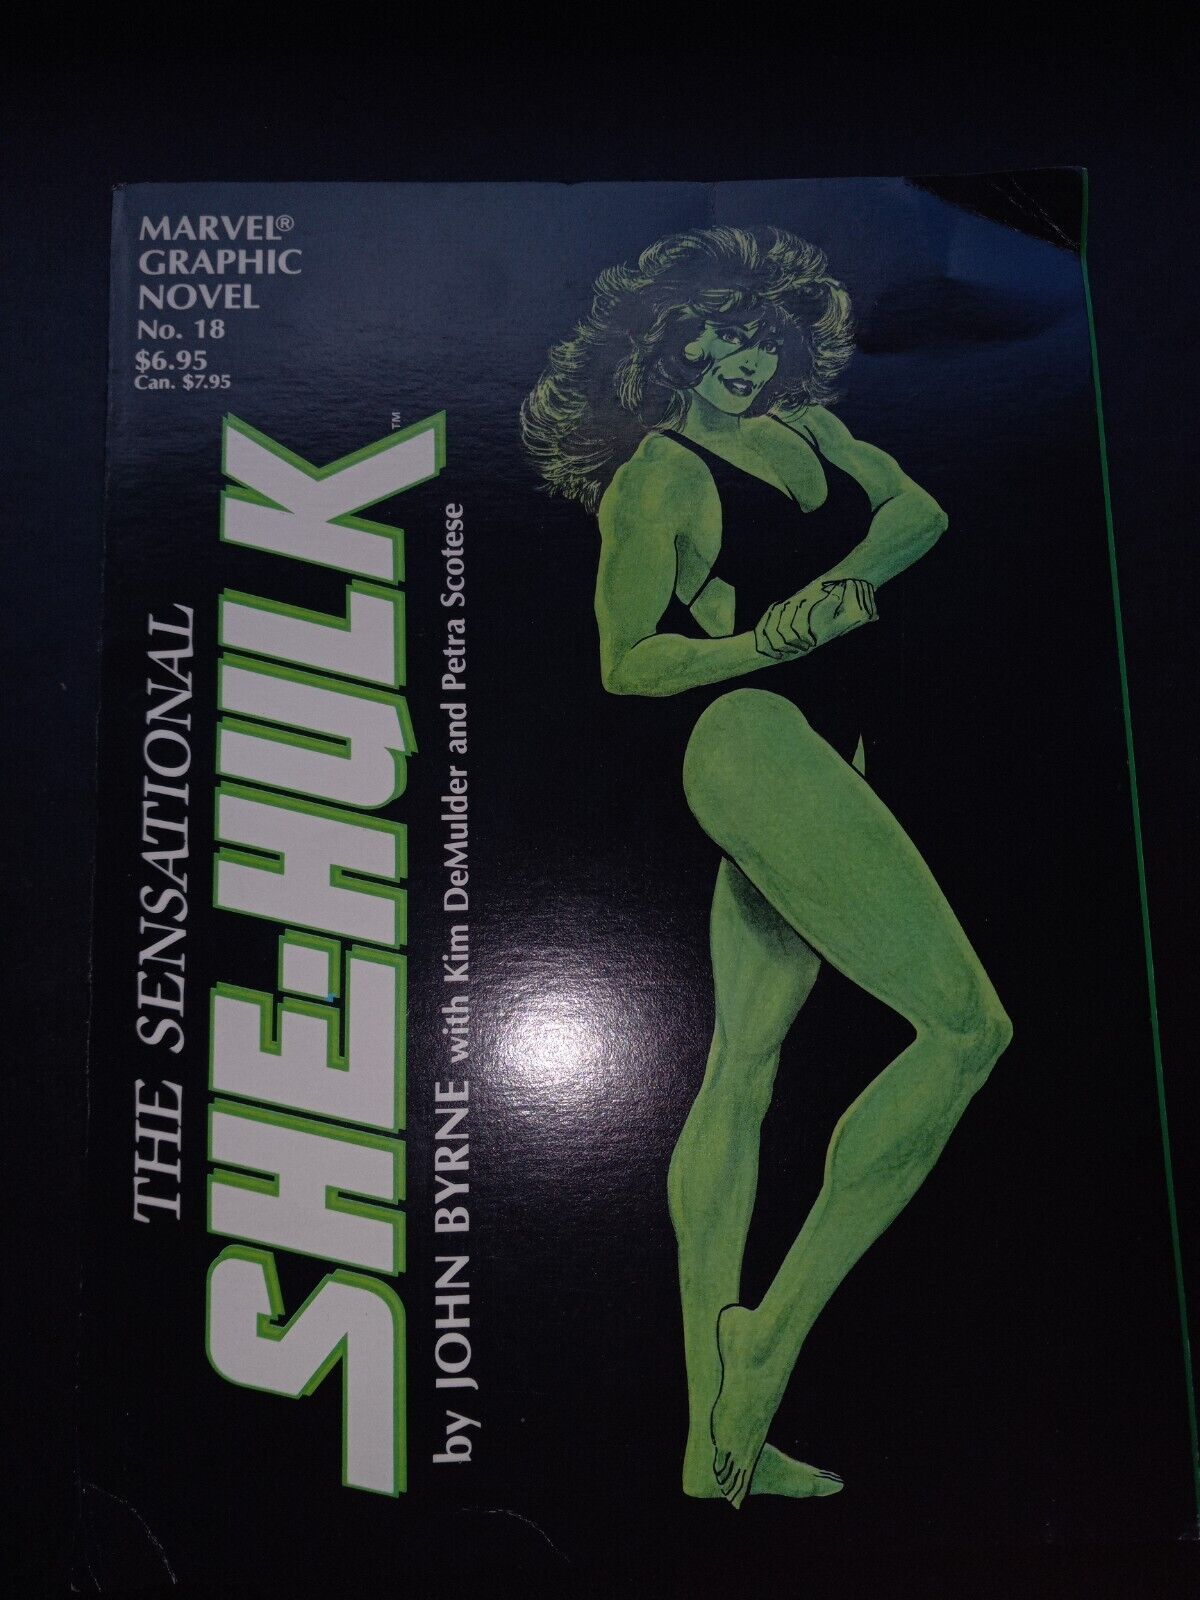 Sensational She-Hulk Marvel 1985  Graphic Novel #18 First Print TPB John Byrne  